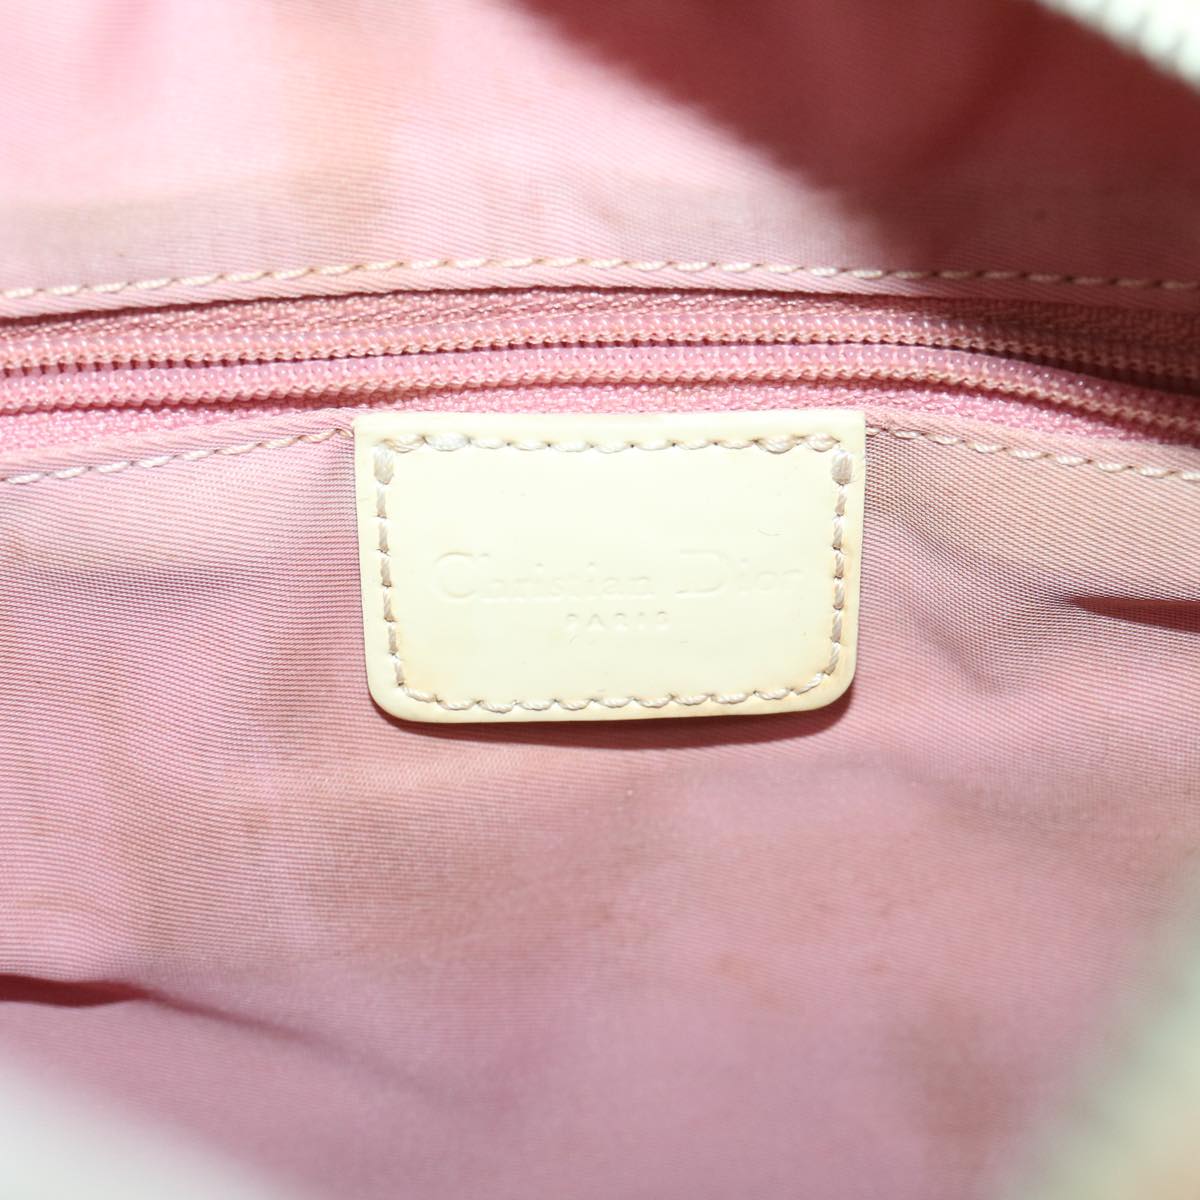 Christian Dior Trotter Canvas Flower Shoulder Bag Pink Auth bs3998